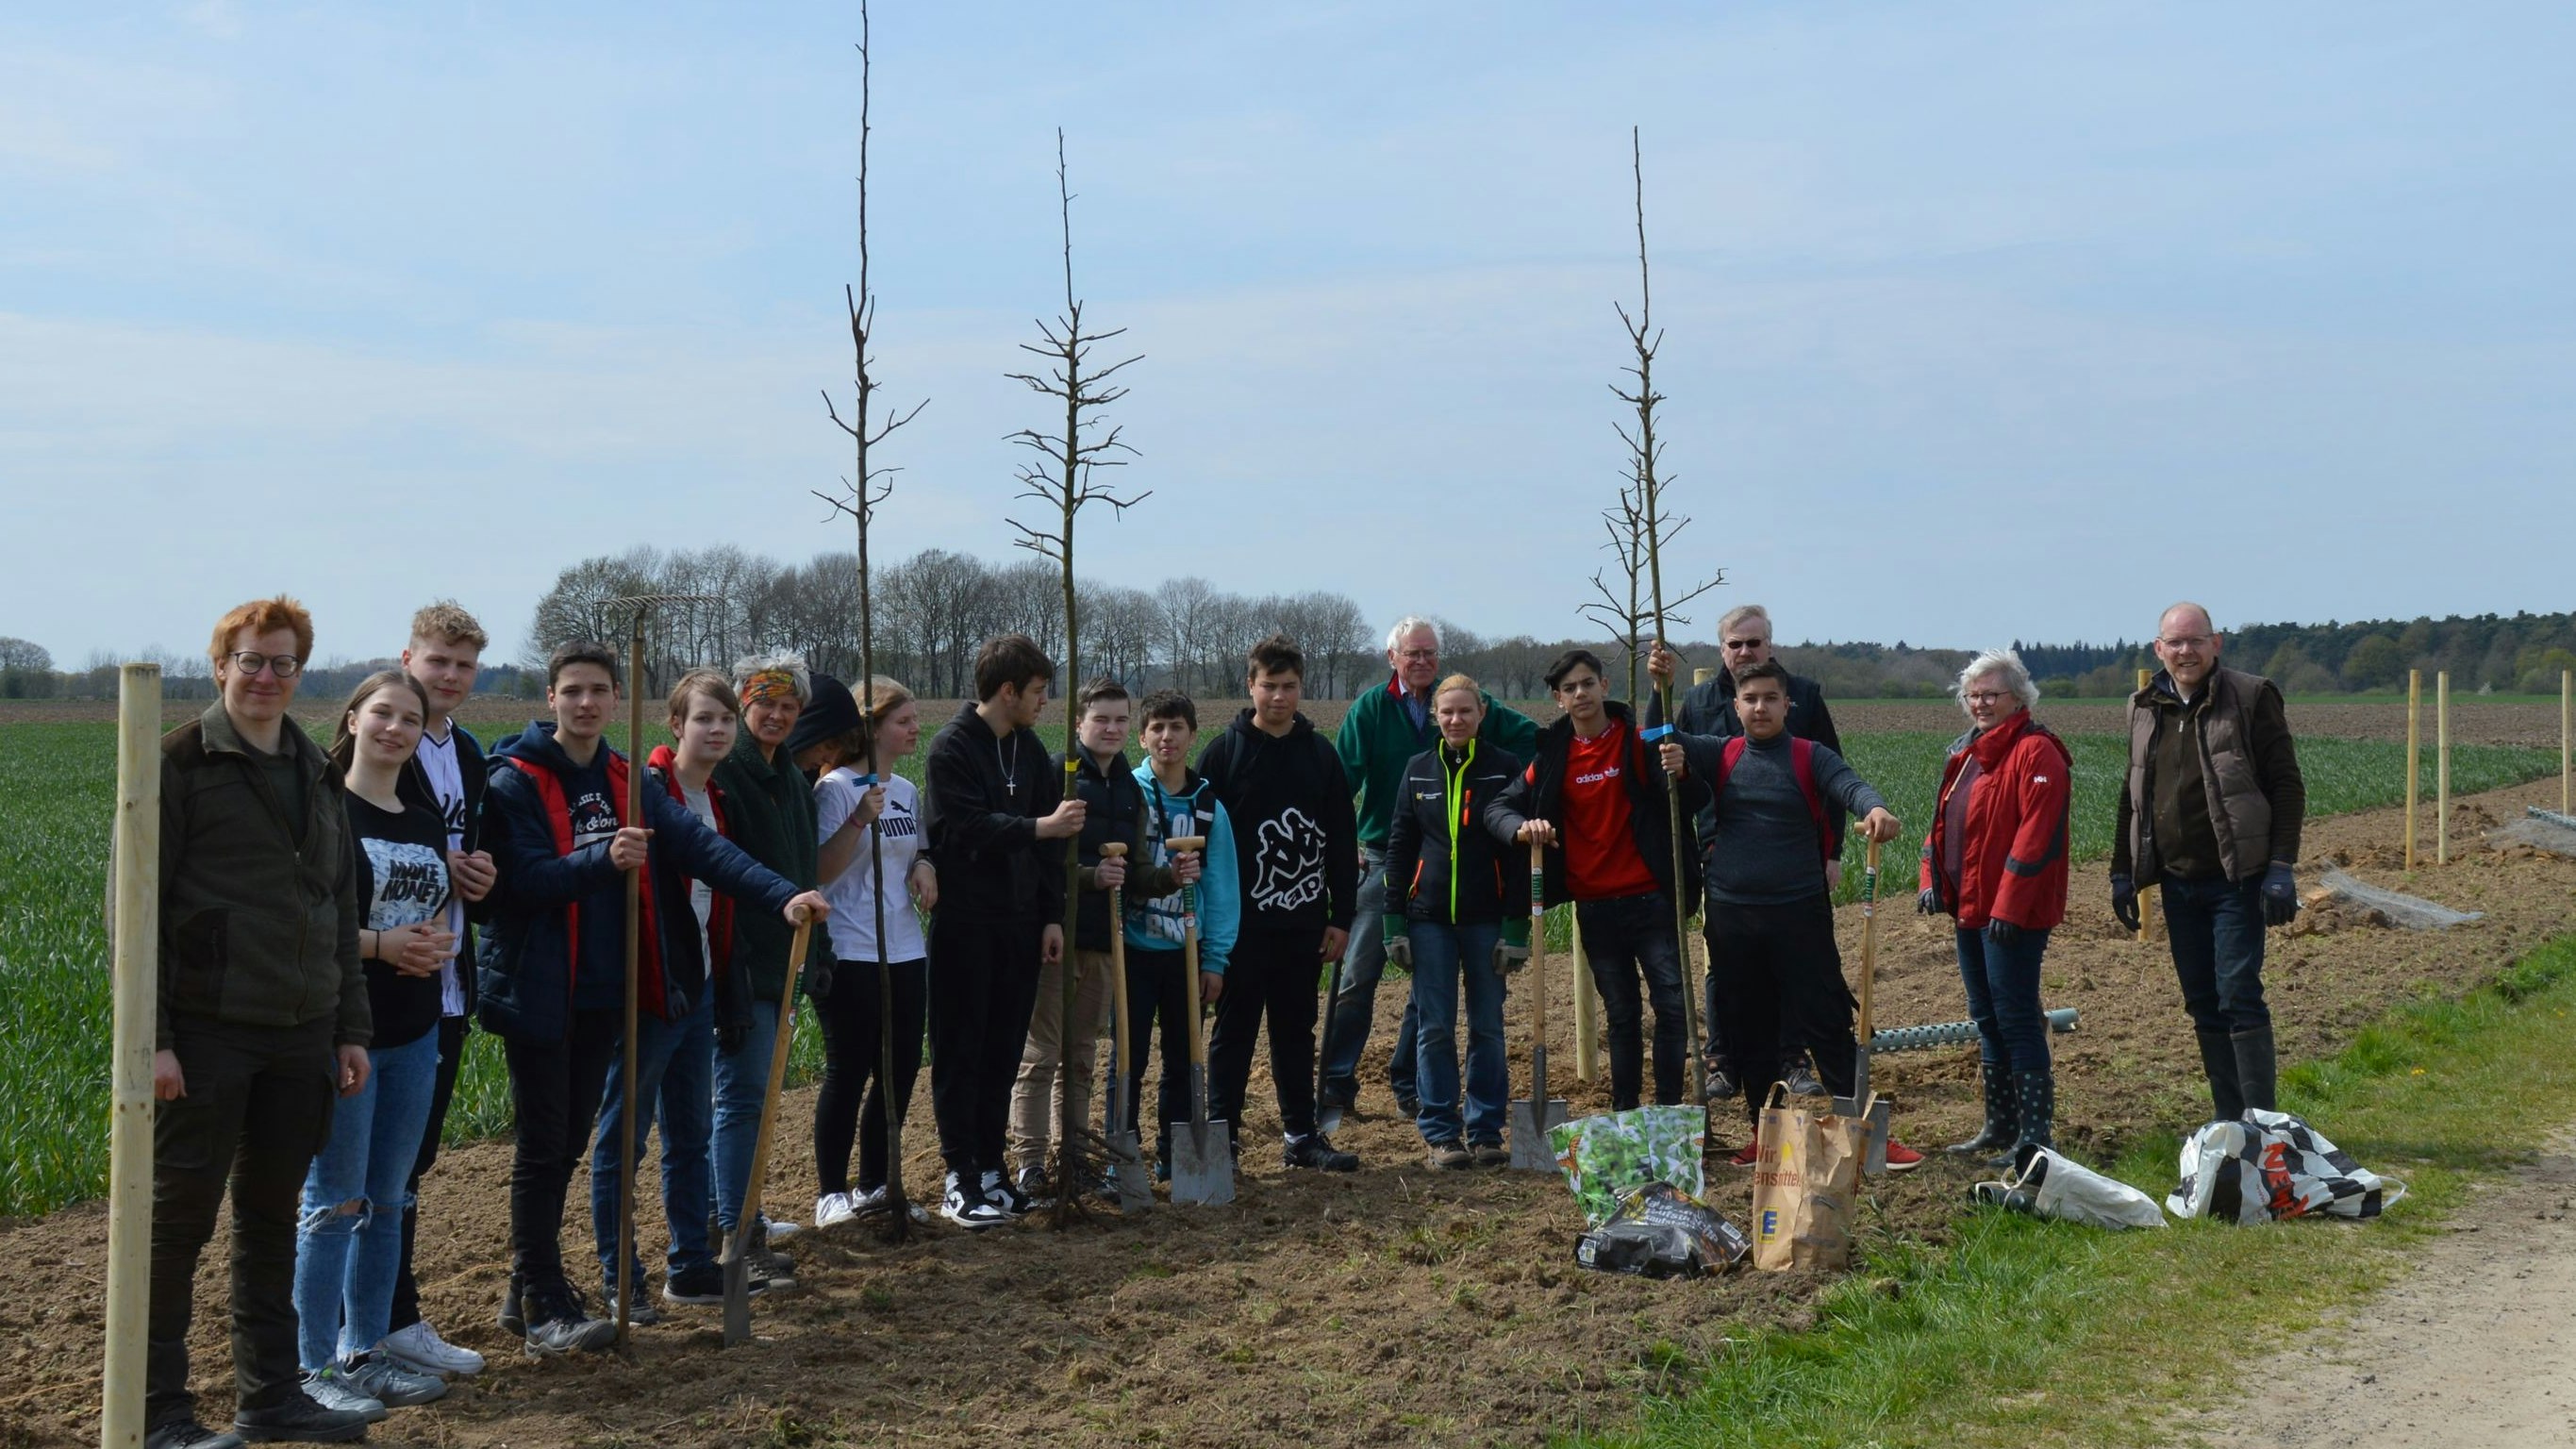 Tatkräftig mit angepackt: In Ambergen ist das erste Projekt bereits mit Unterstützung von Hegering, Schülerinnen und Schülern und weiteren Freiwilligen umgesetzt worden. So wurden rund 40 Obstbäume gepflanzt. Foto: Lehmkuhl